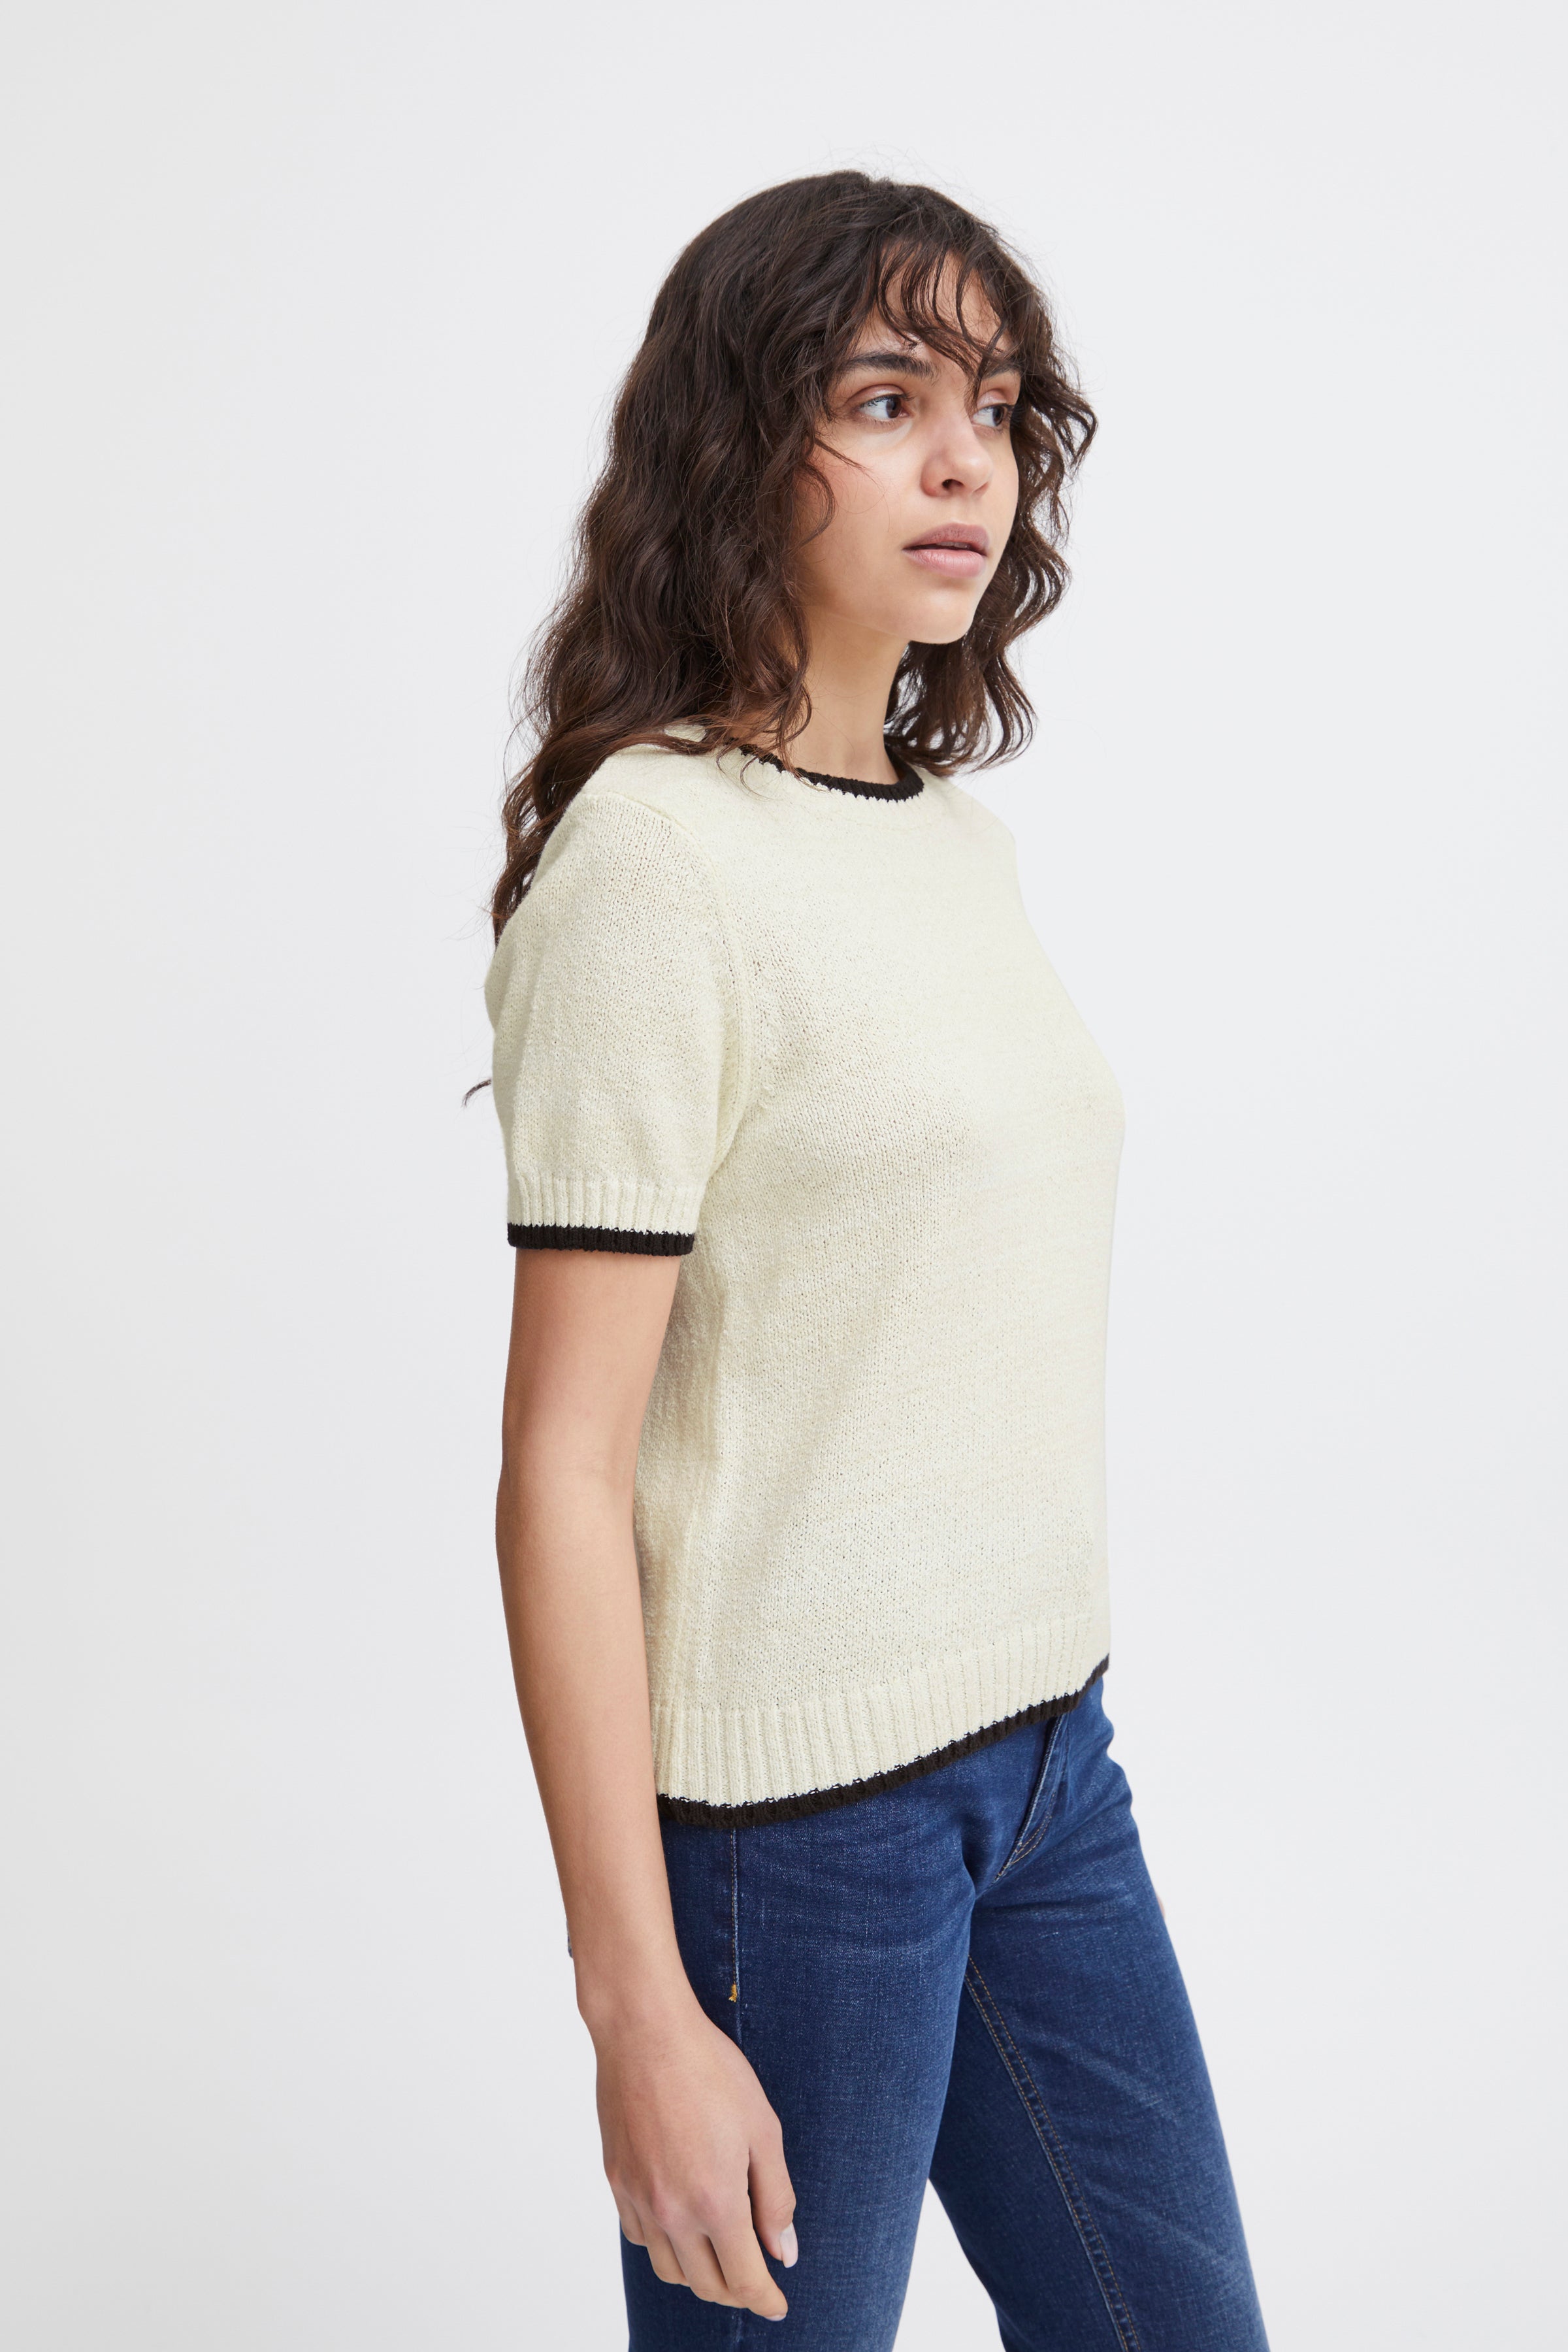 Ihaguste short sleeve knit | Ichi